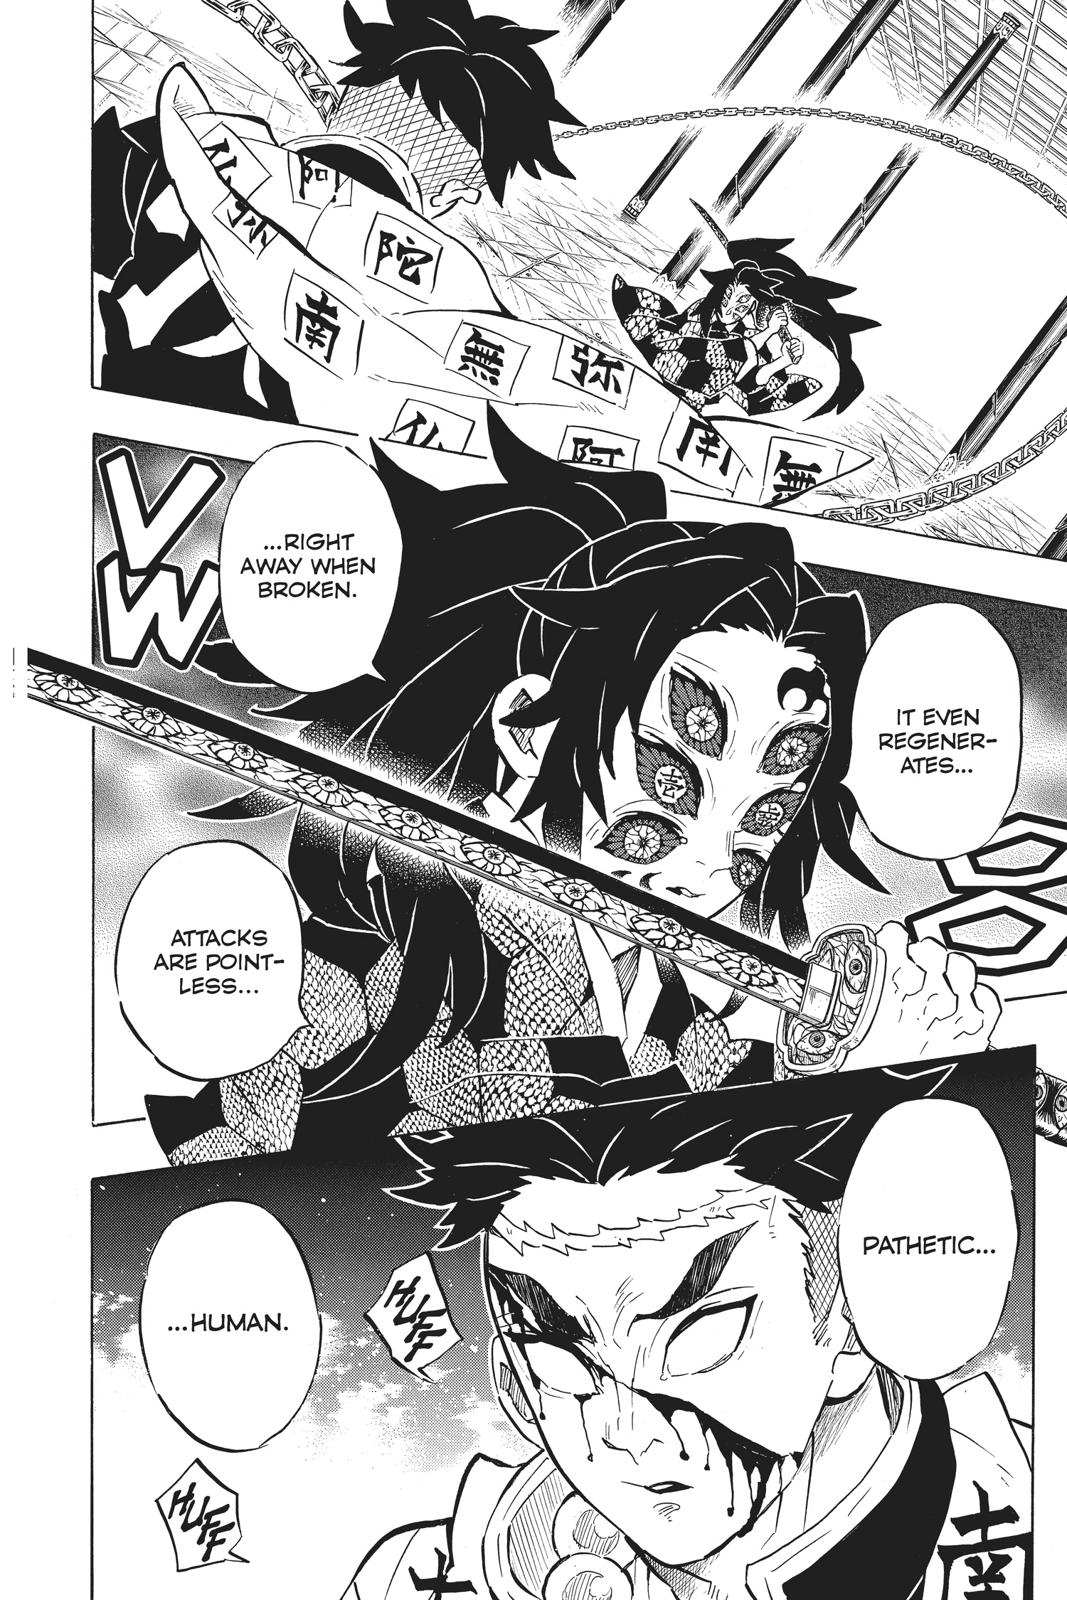 Demon Slayer Manga Manga Chapter - 169 - image 17